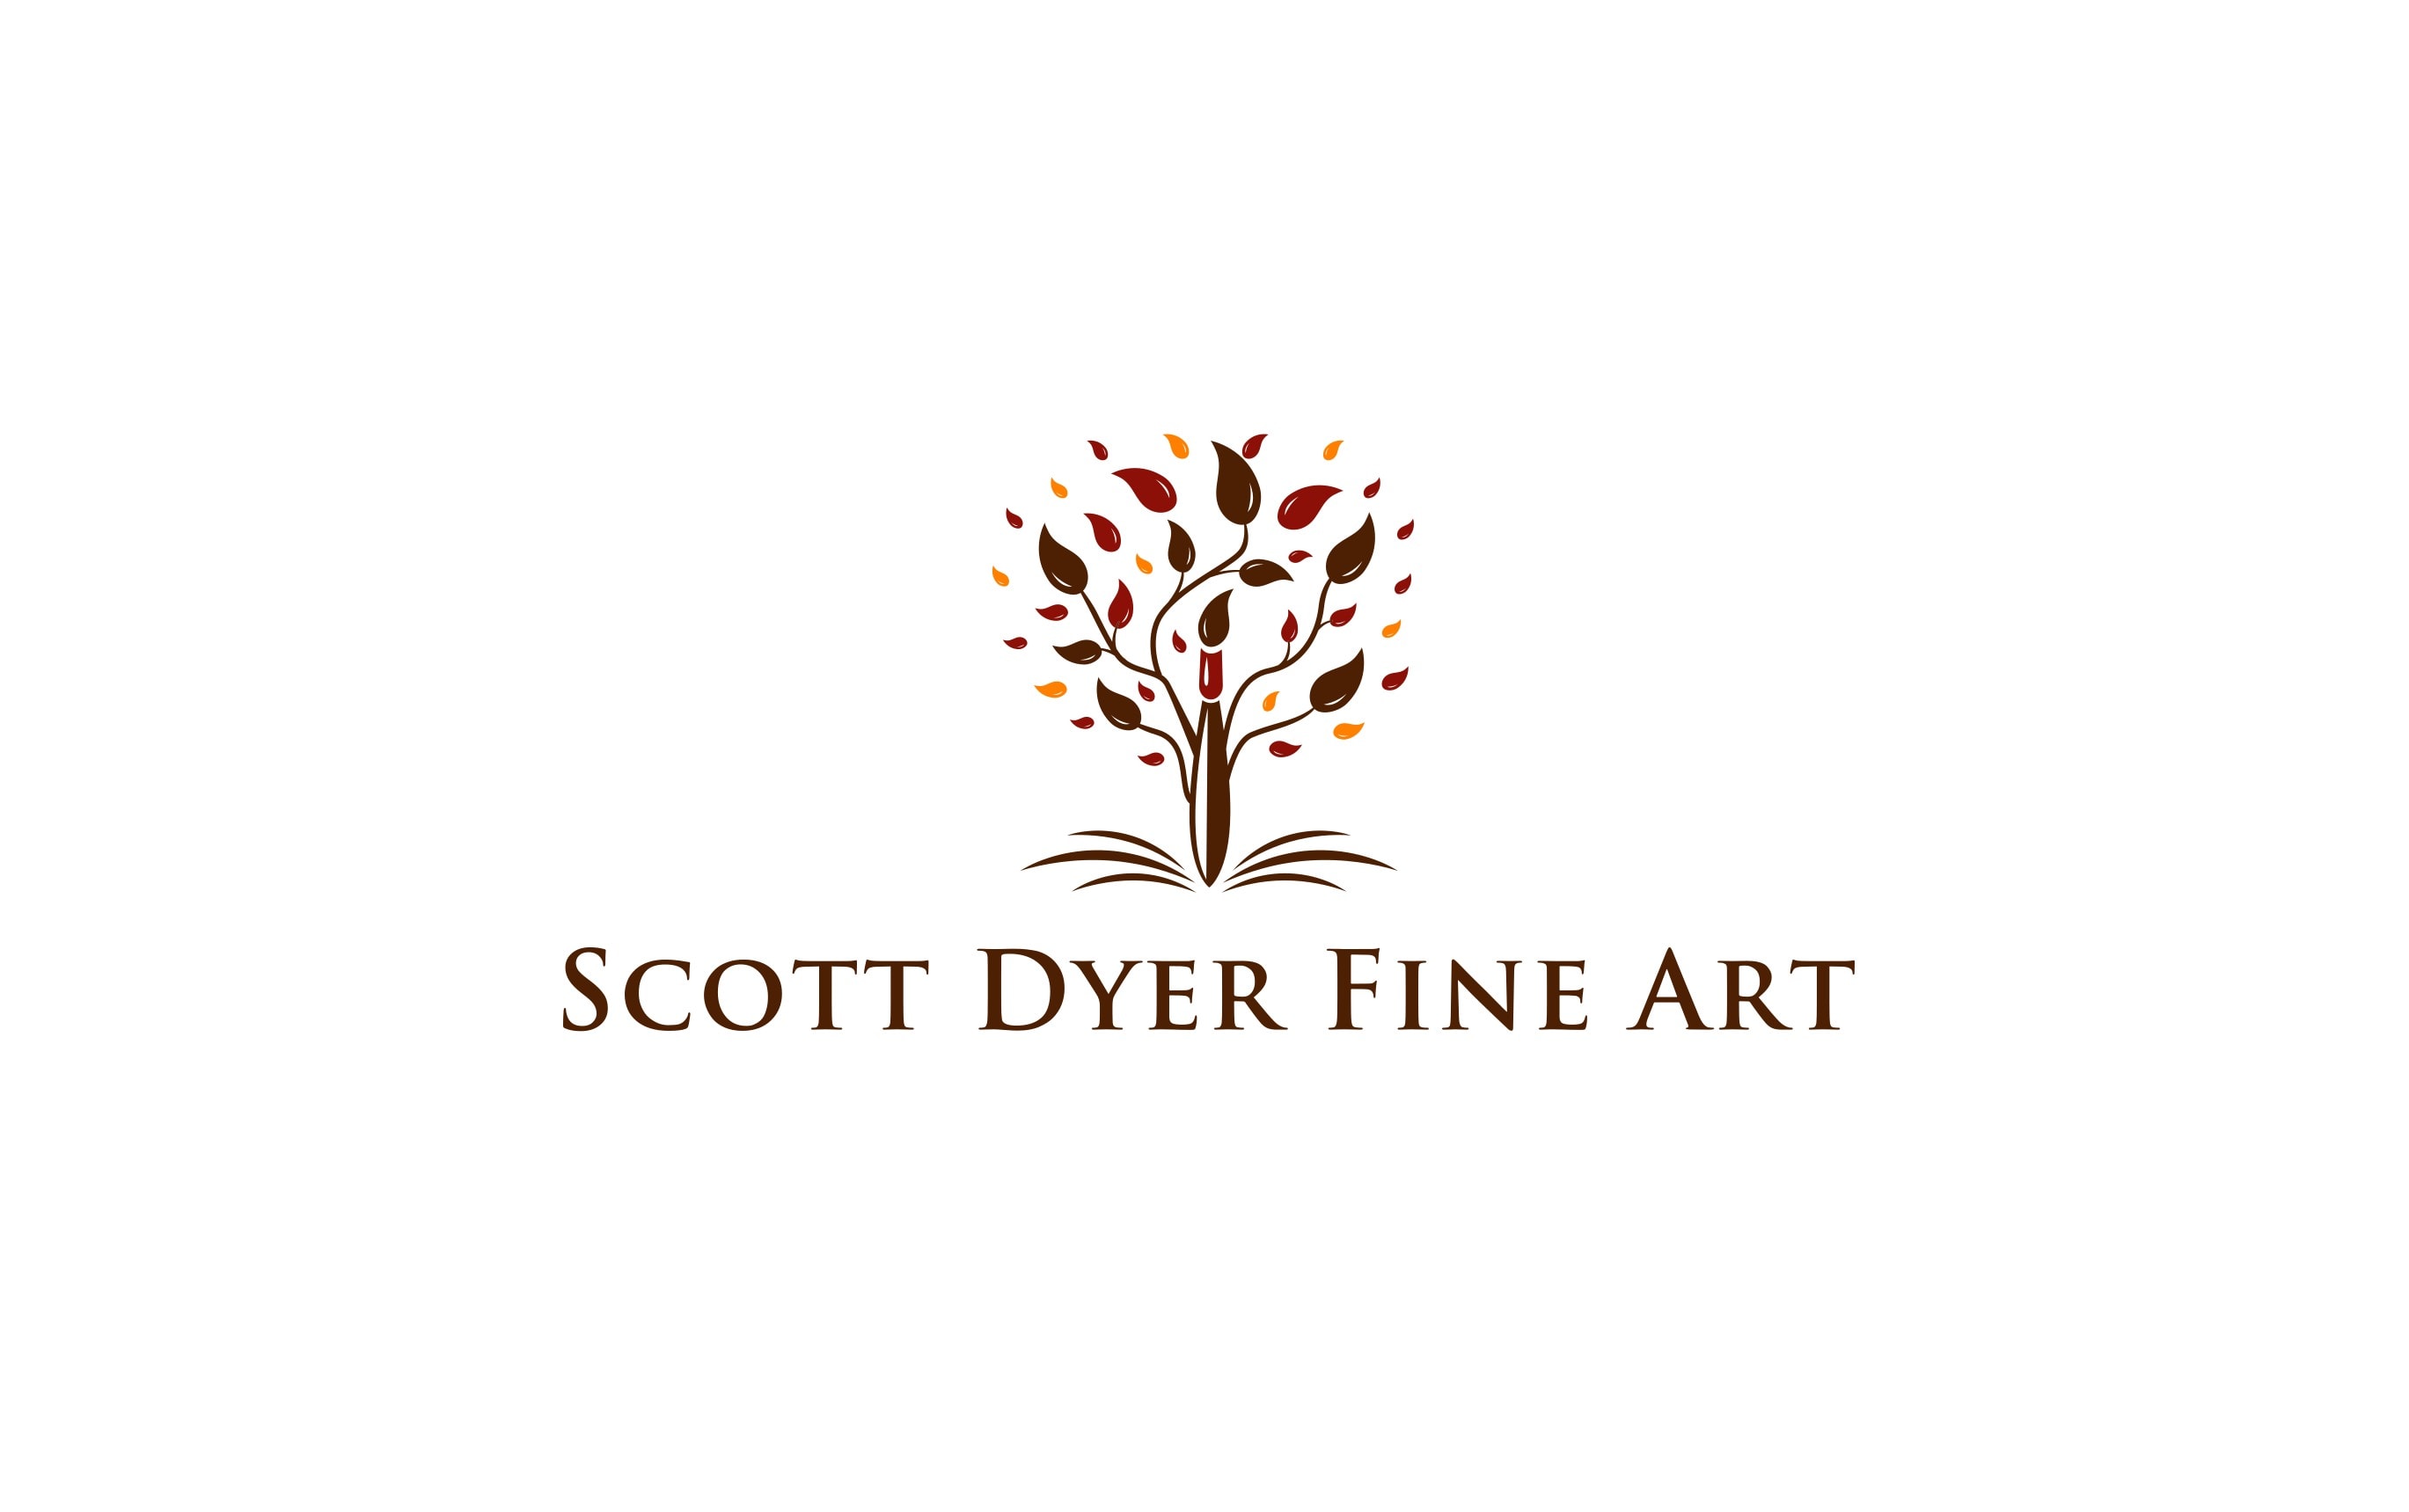 Scott Dyer Fine Art